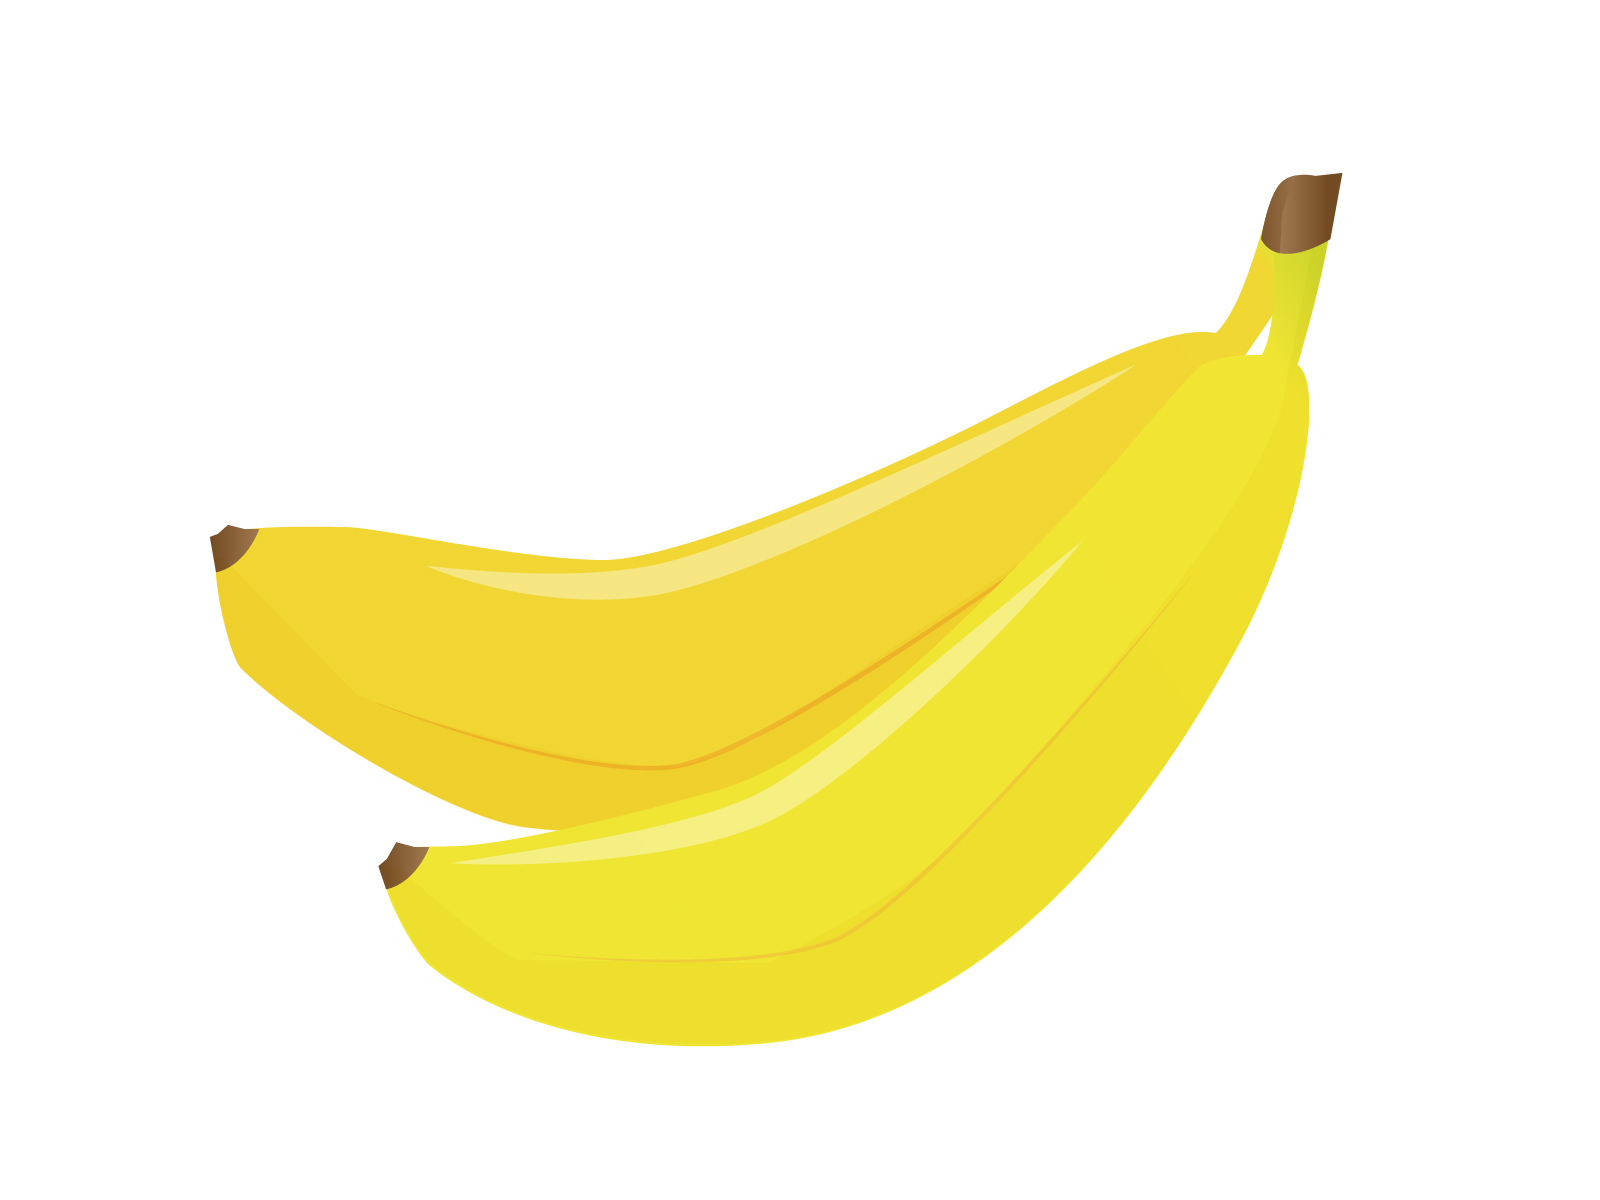 【朗報】SONYがバナナをコント口ーラーに出来る特許を取得、ゲーマーはPS5をバナナで操作する時代へ